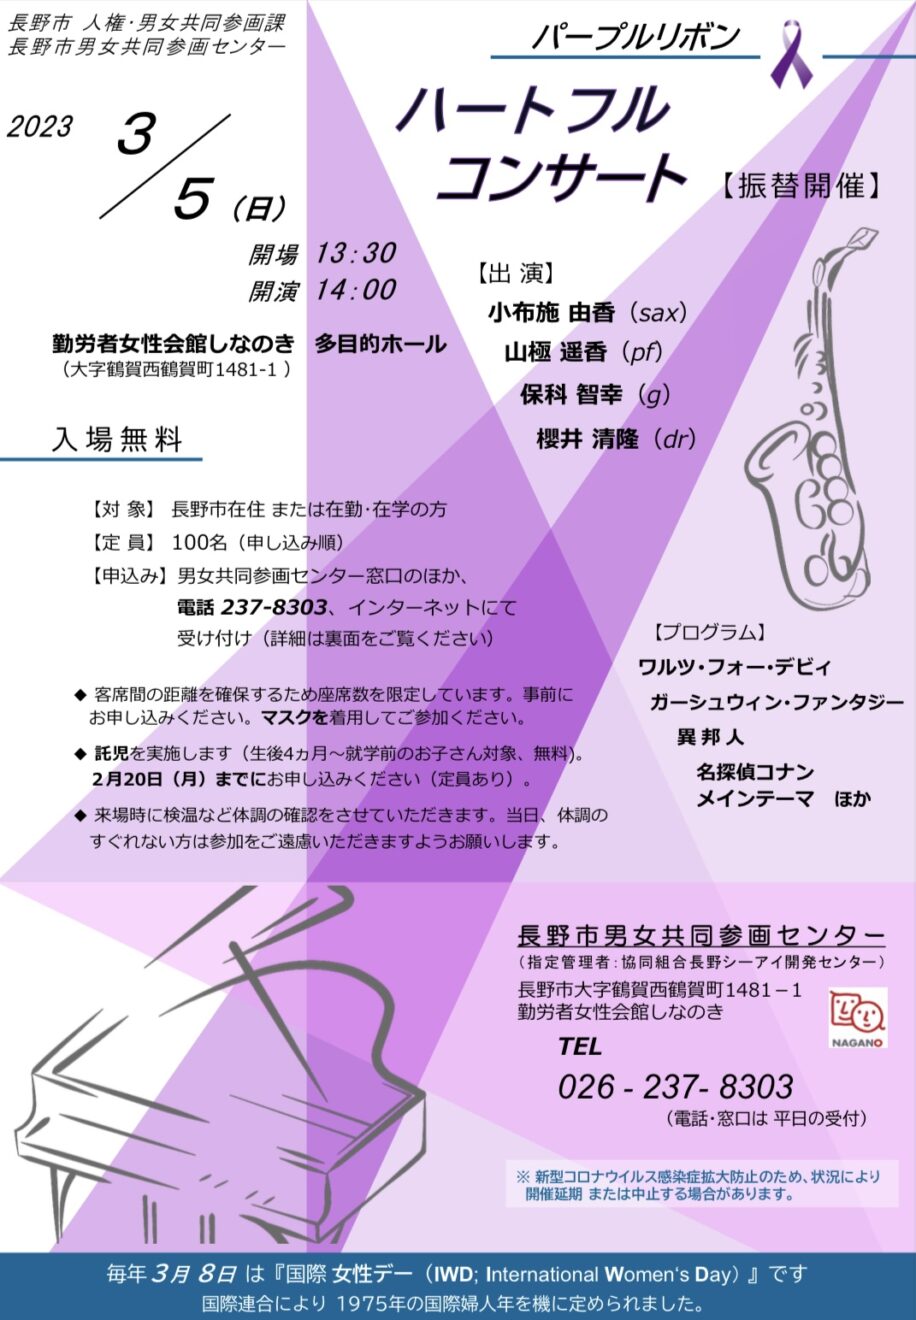 コンサートのお知らせ | 長野市男女共同参画センター2022
パープルリボン「ハートフルコンサート」